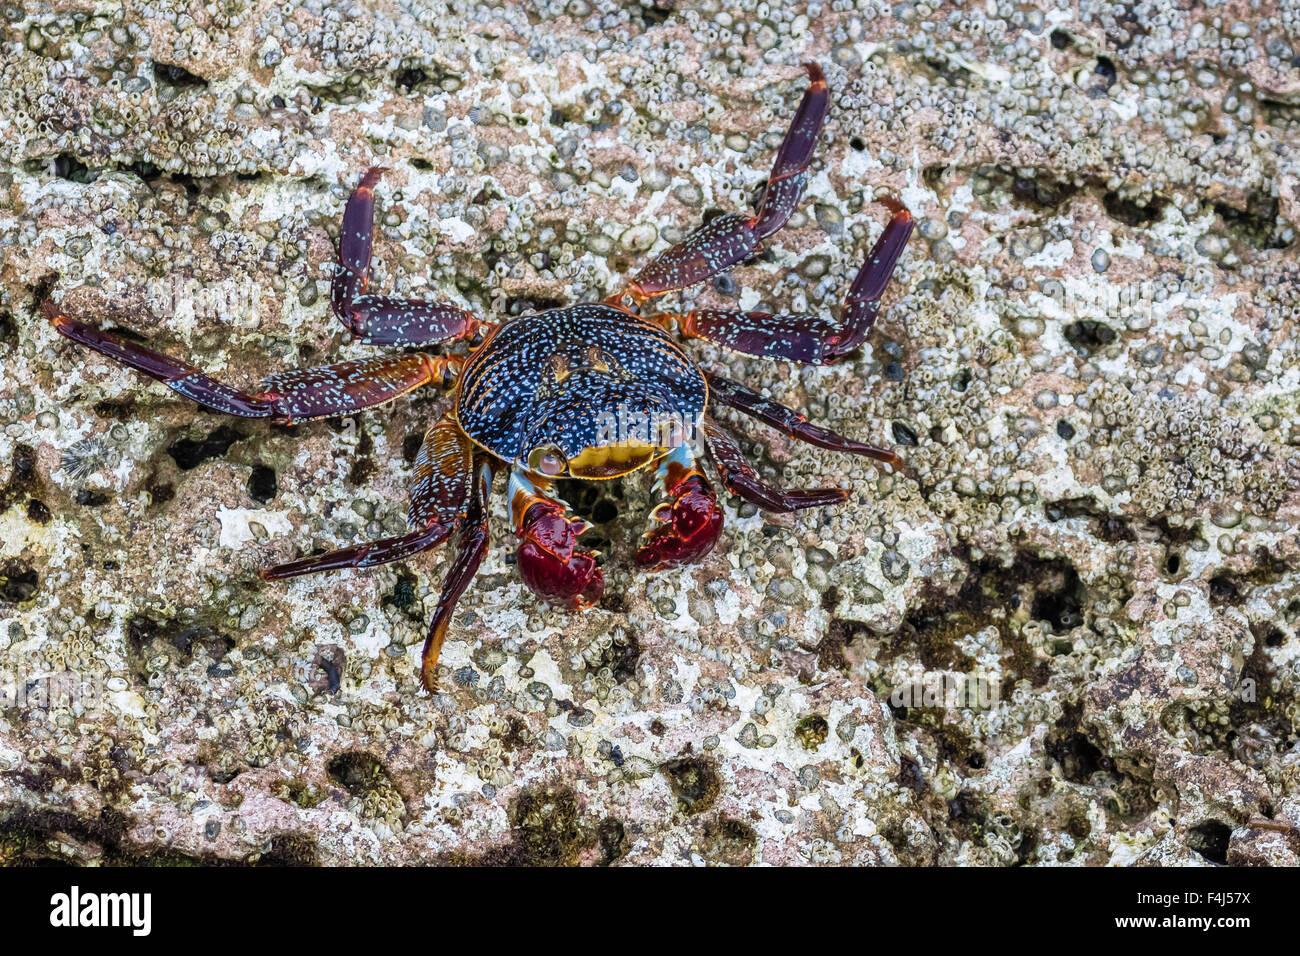 Sally Lightfoot crab adultes (Grapsus grapsus) à marée basse sur Punta Colorado, Isla San Jose, Baja California Sur, Mexique Banque D'Images